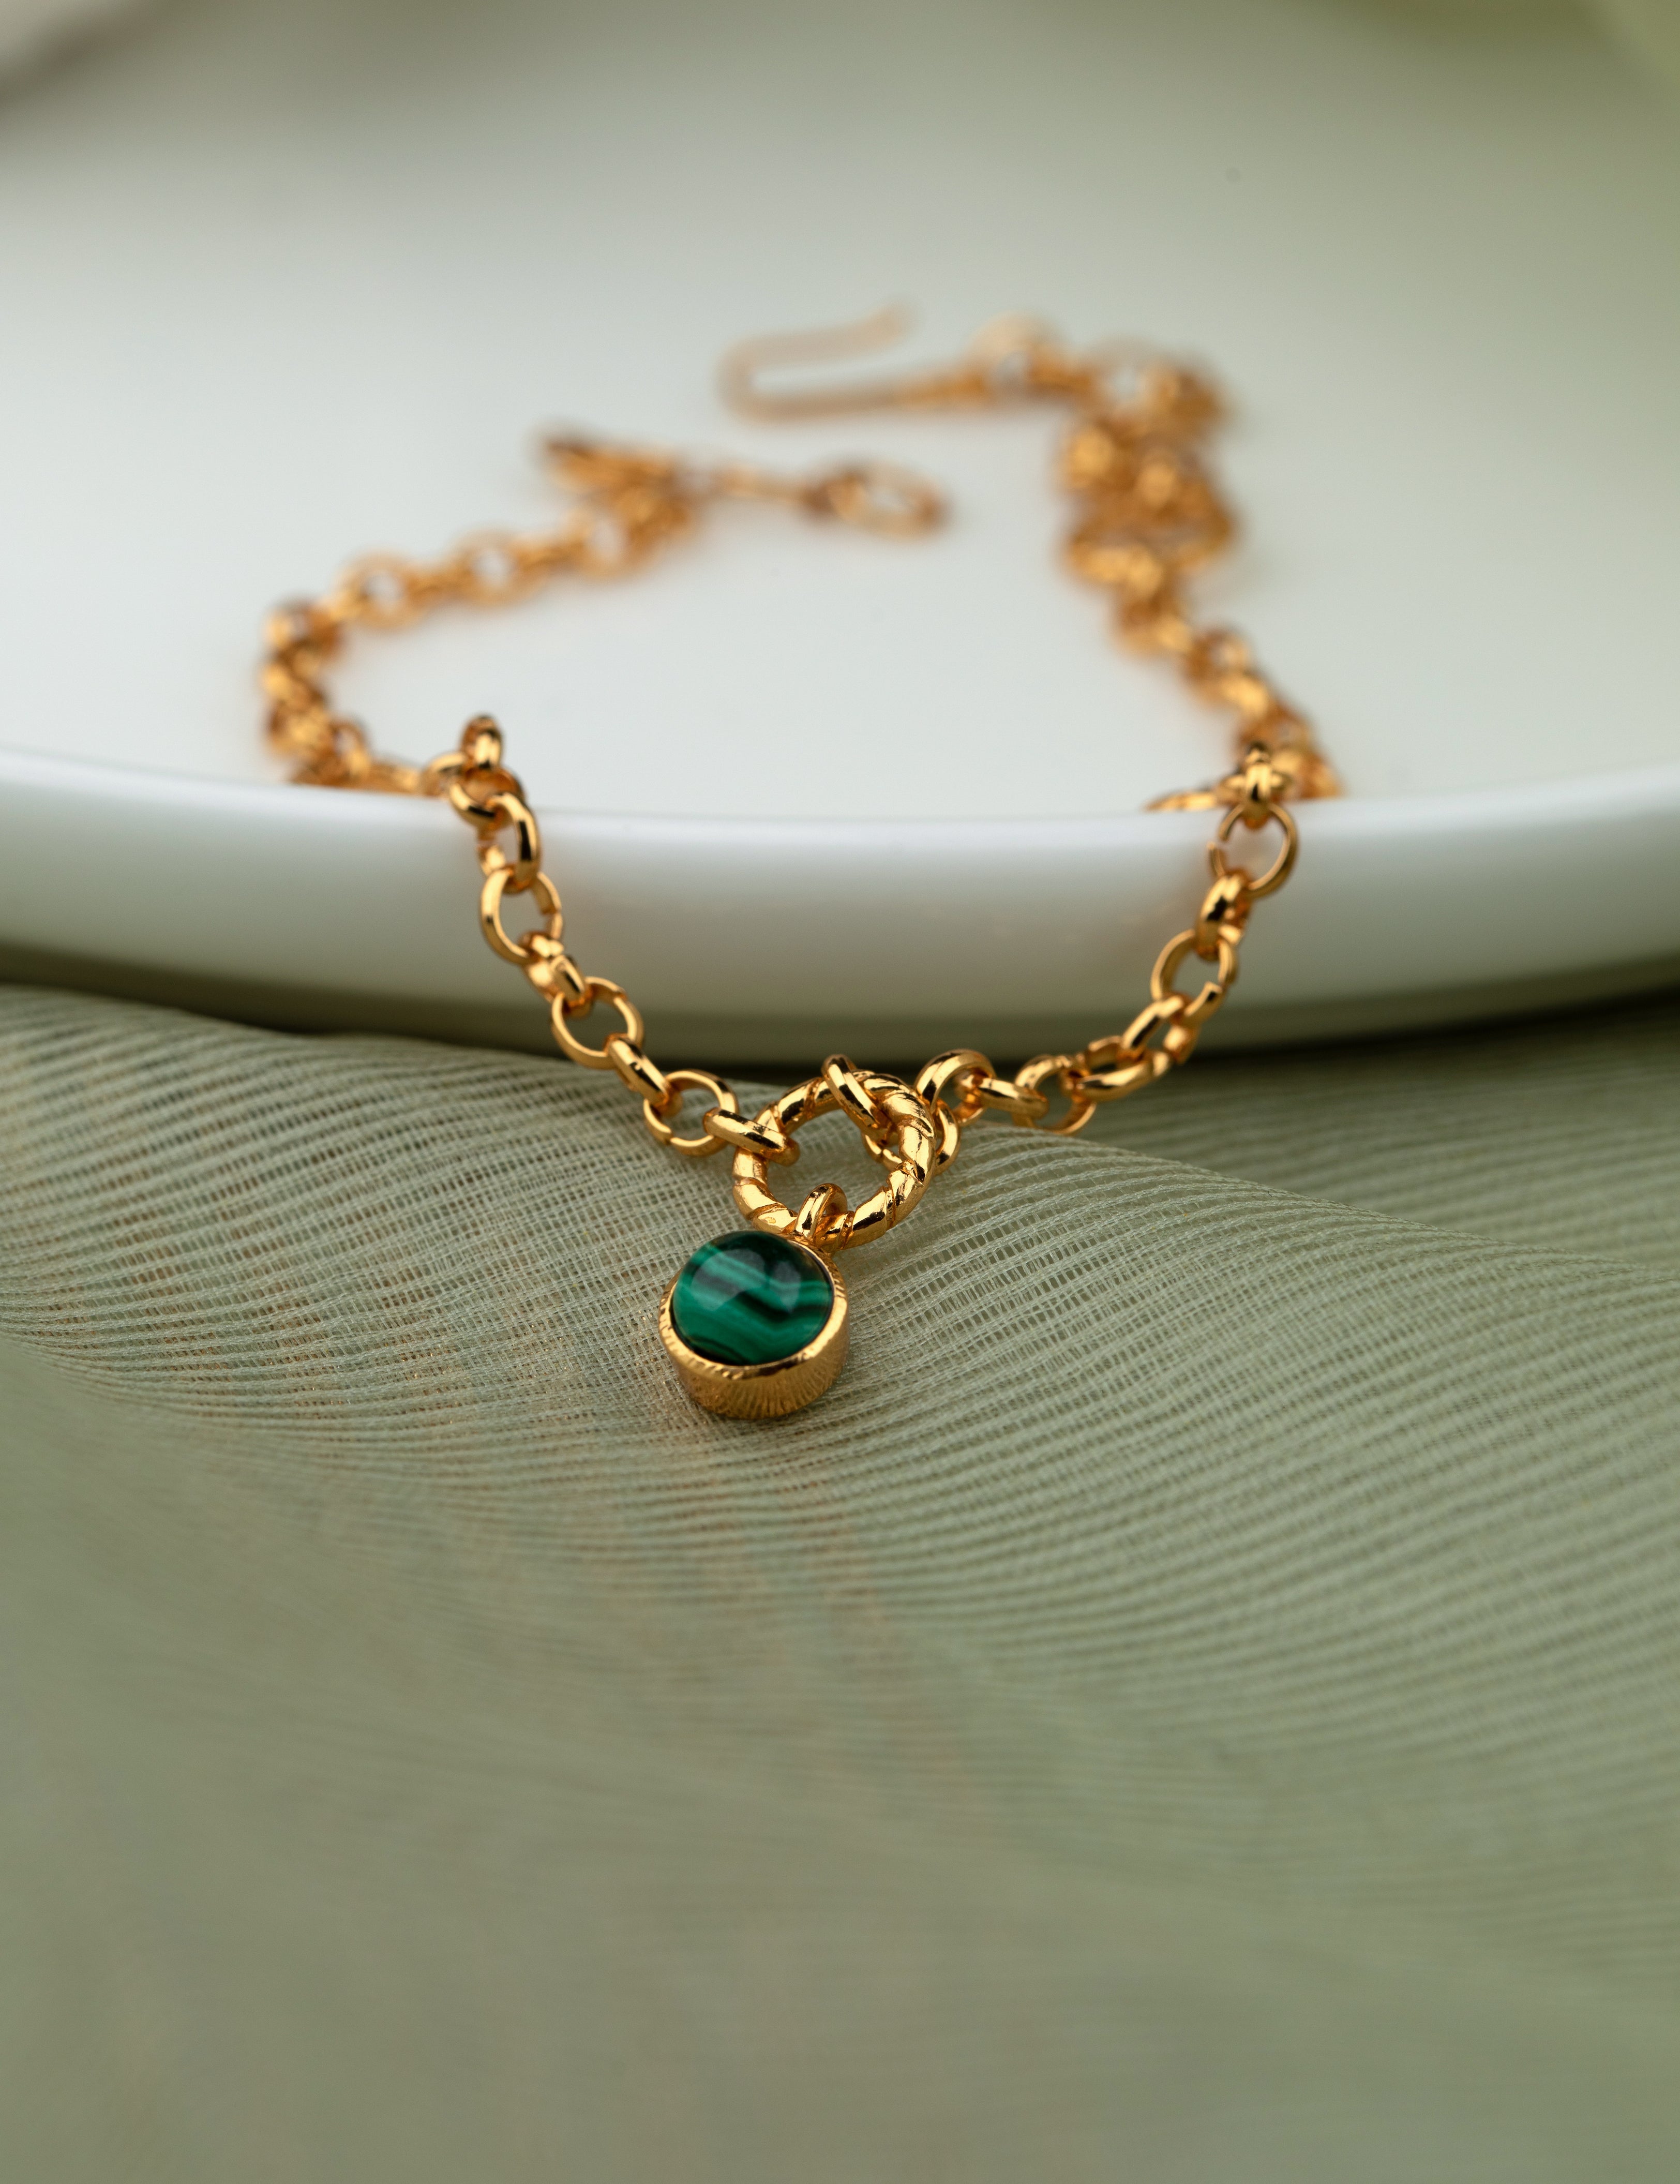 Esme 18k Gold Plating On Brass Anklet With Tiny Semi-precious Stones - ZEWAR Jewelry